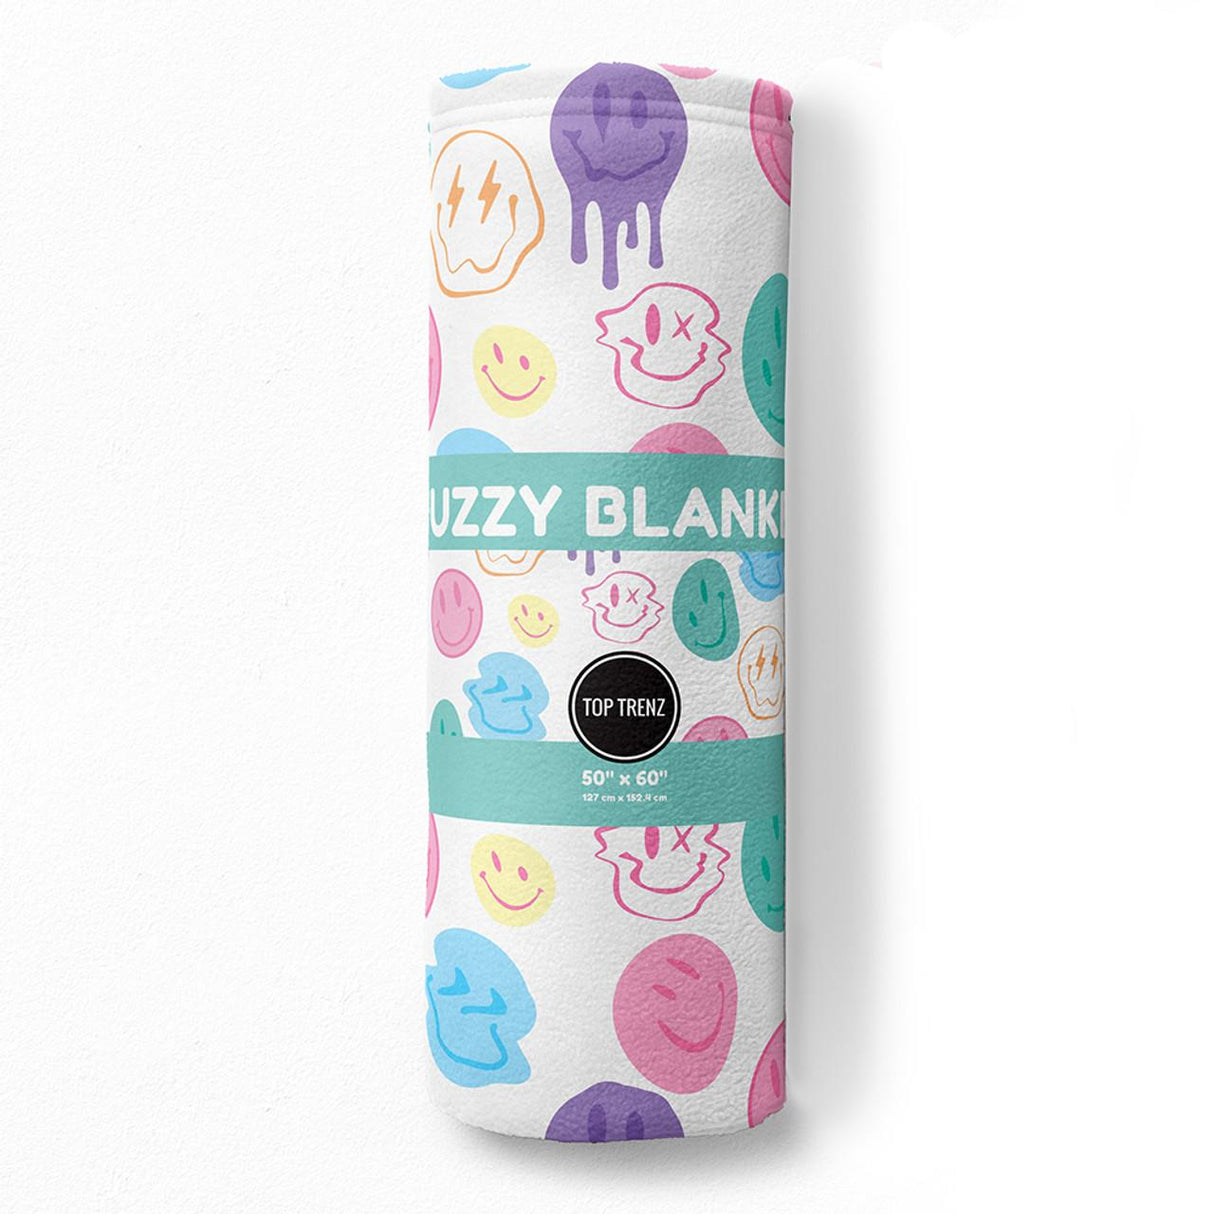 Top Trenz Smiley Fuzzy Throw Blanket - BLANK-SMILE7